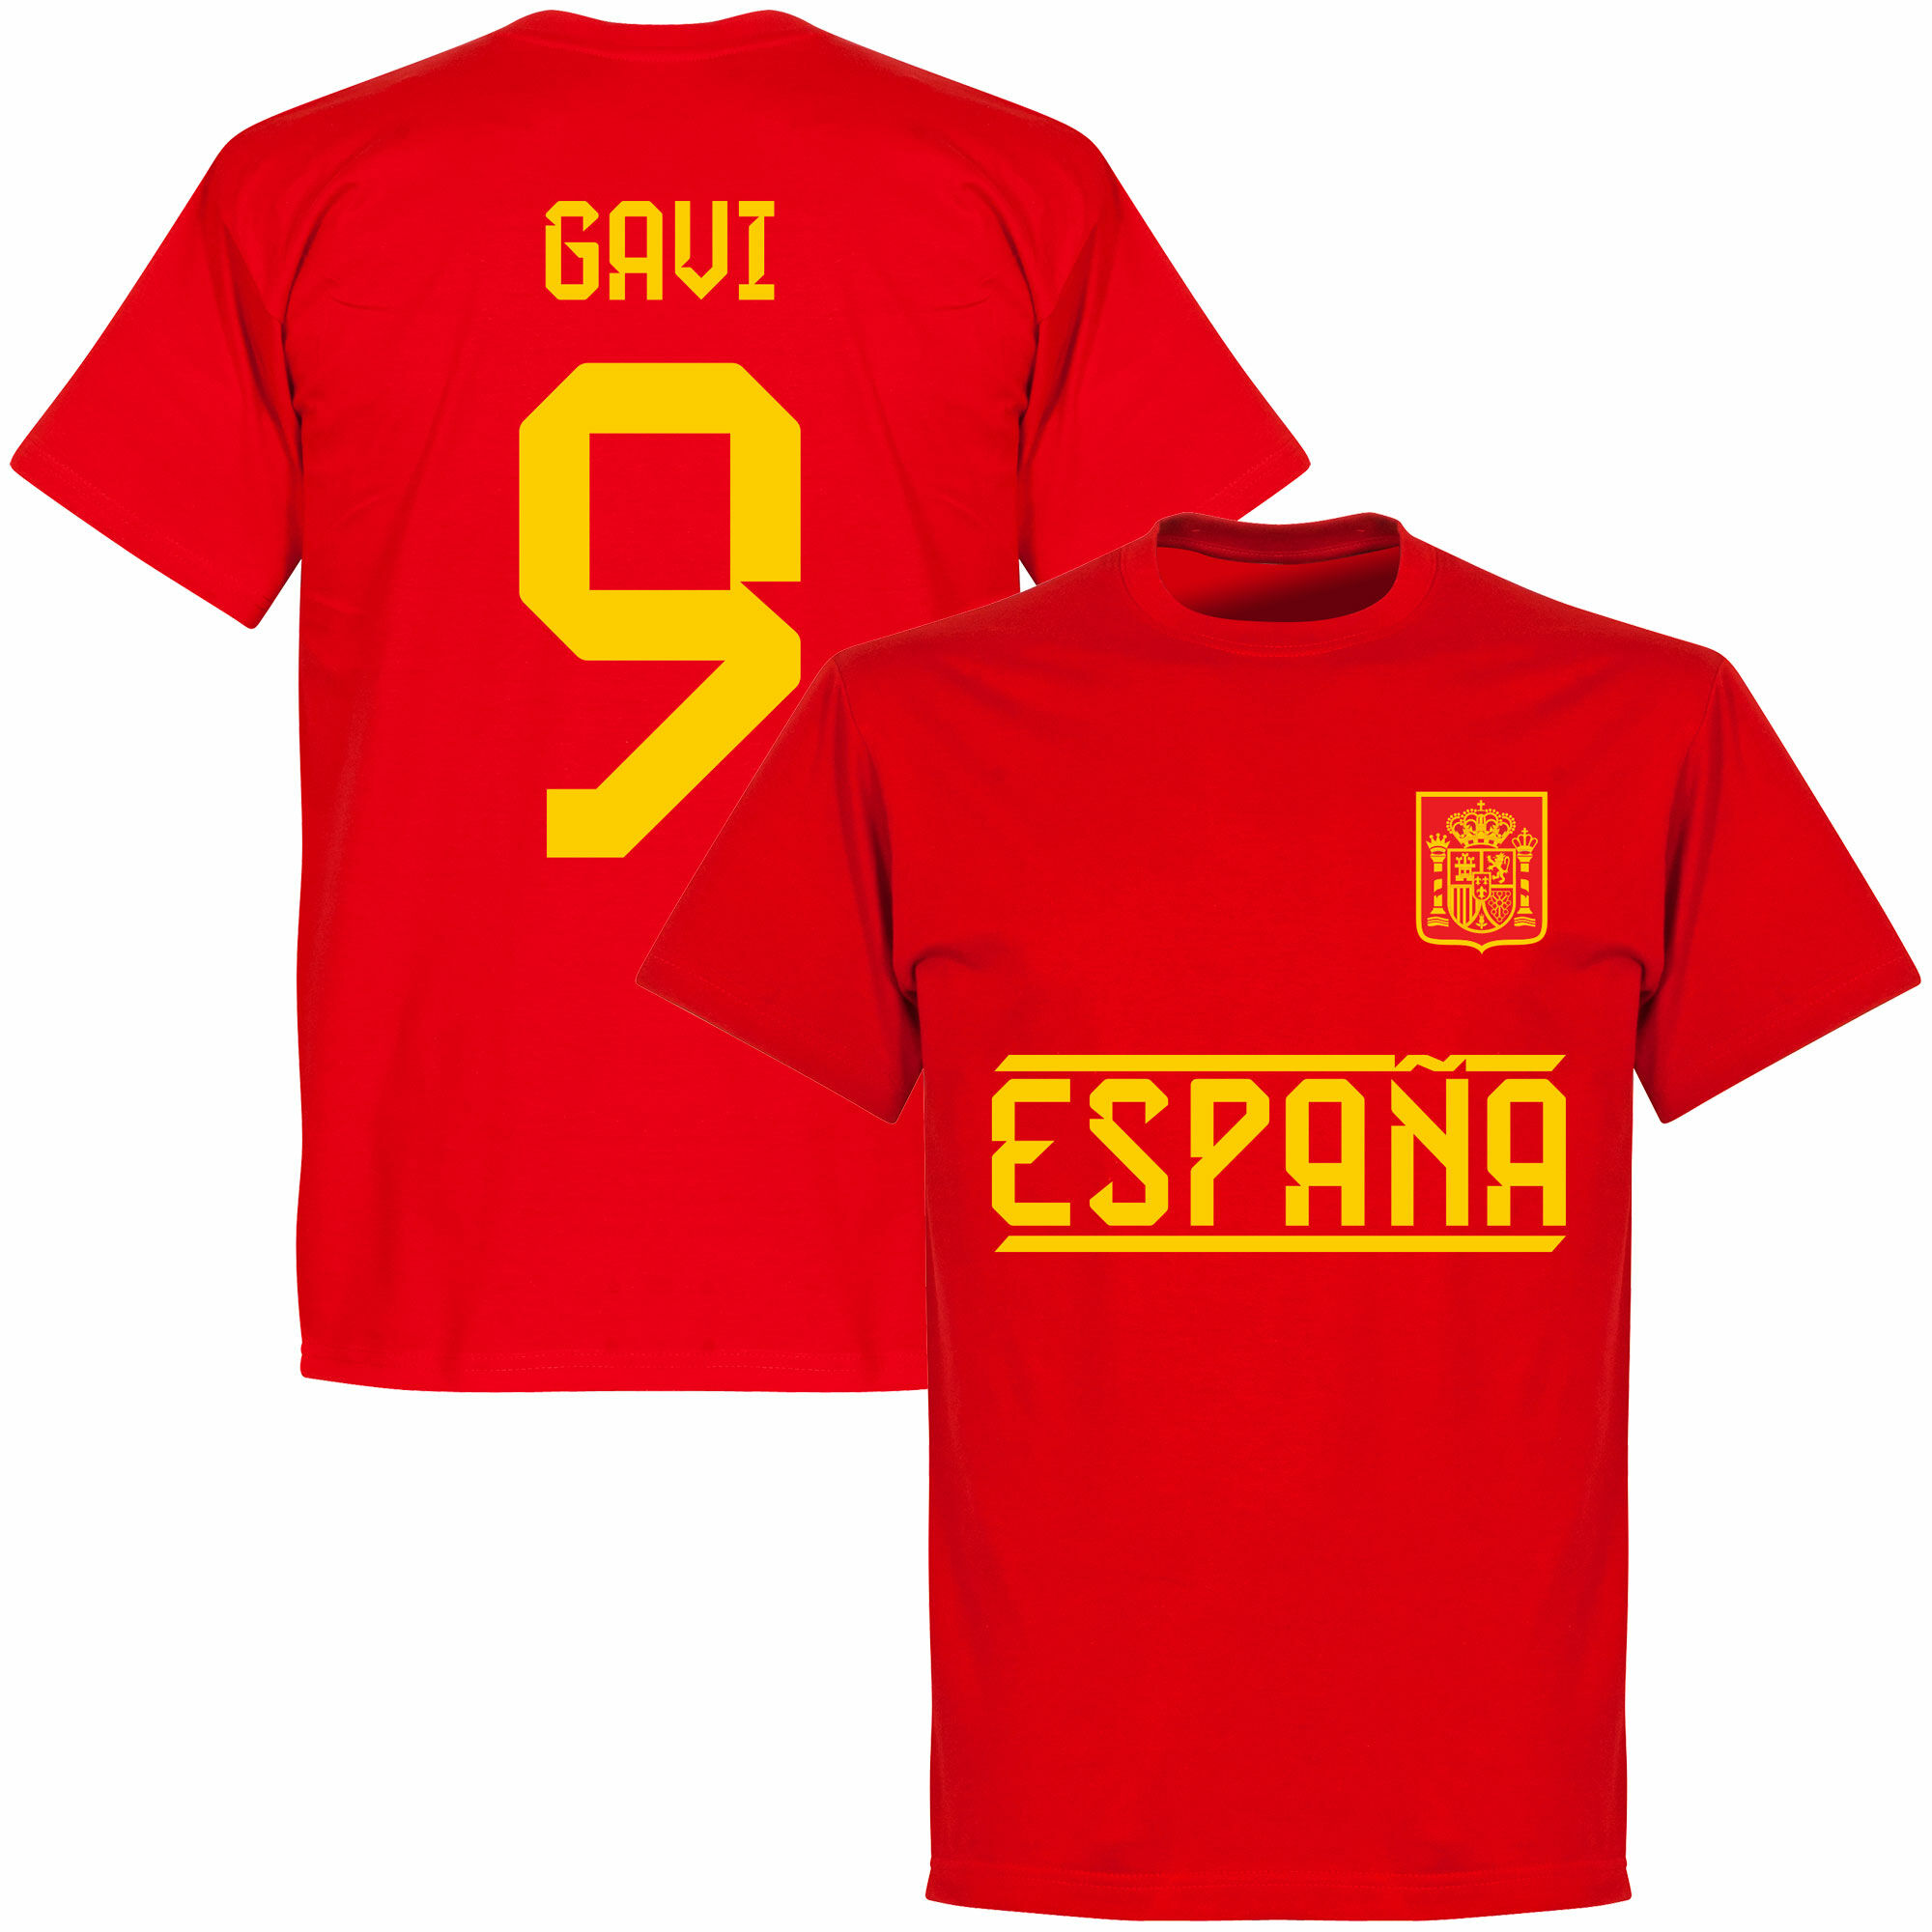 Španělsko - Tričko - červené, Gavi, číslo 9